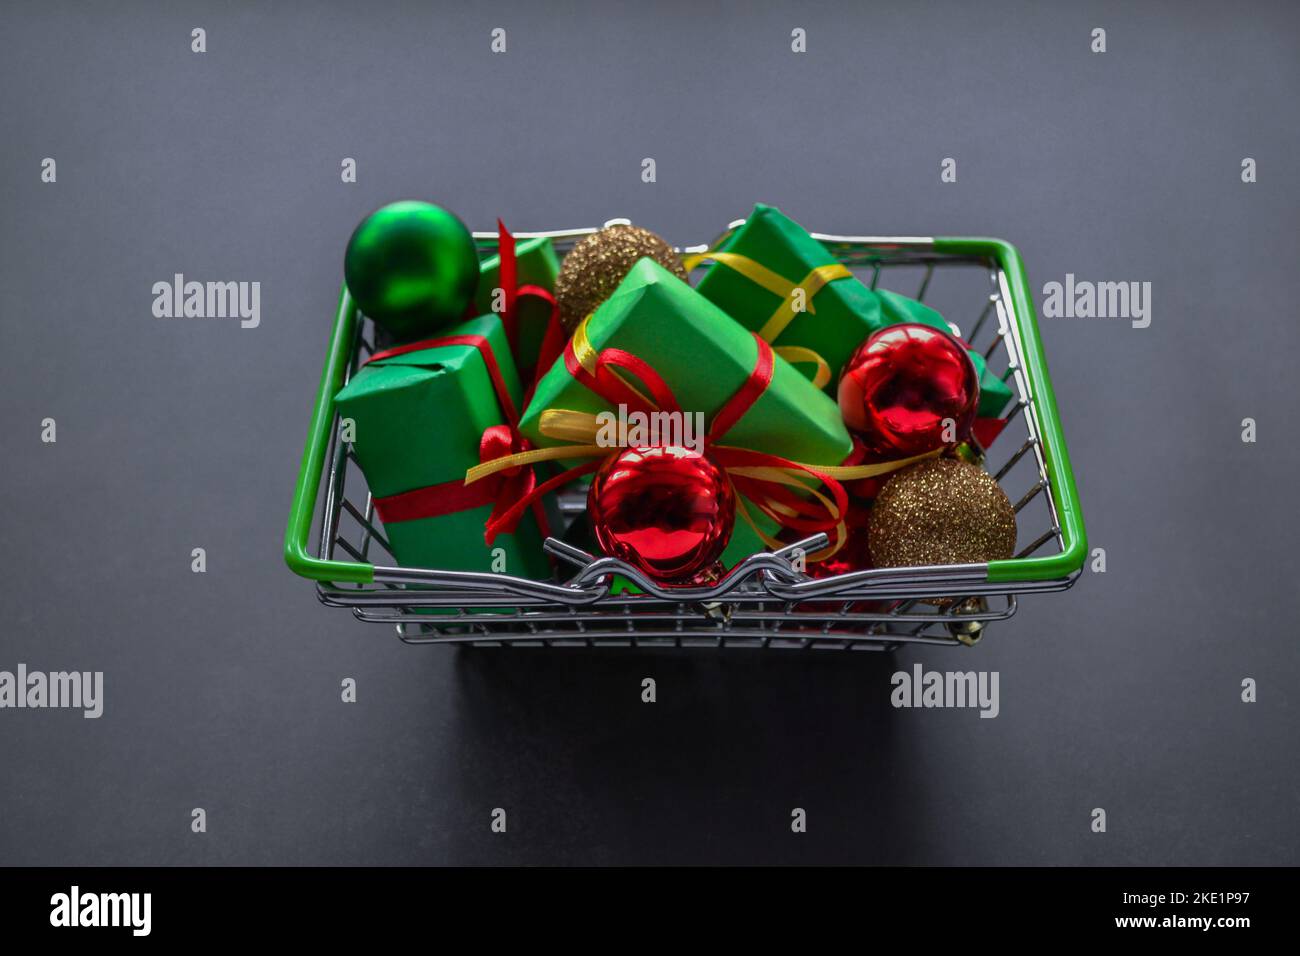 Panier en métal avec cadeaux en papier vert avec noeuds rouges et jaunes, boules de Noël en rouge, vert et or sur fond sombre. Black Friday sa Banque D'Images